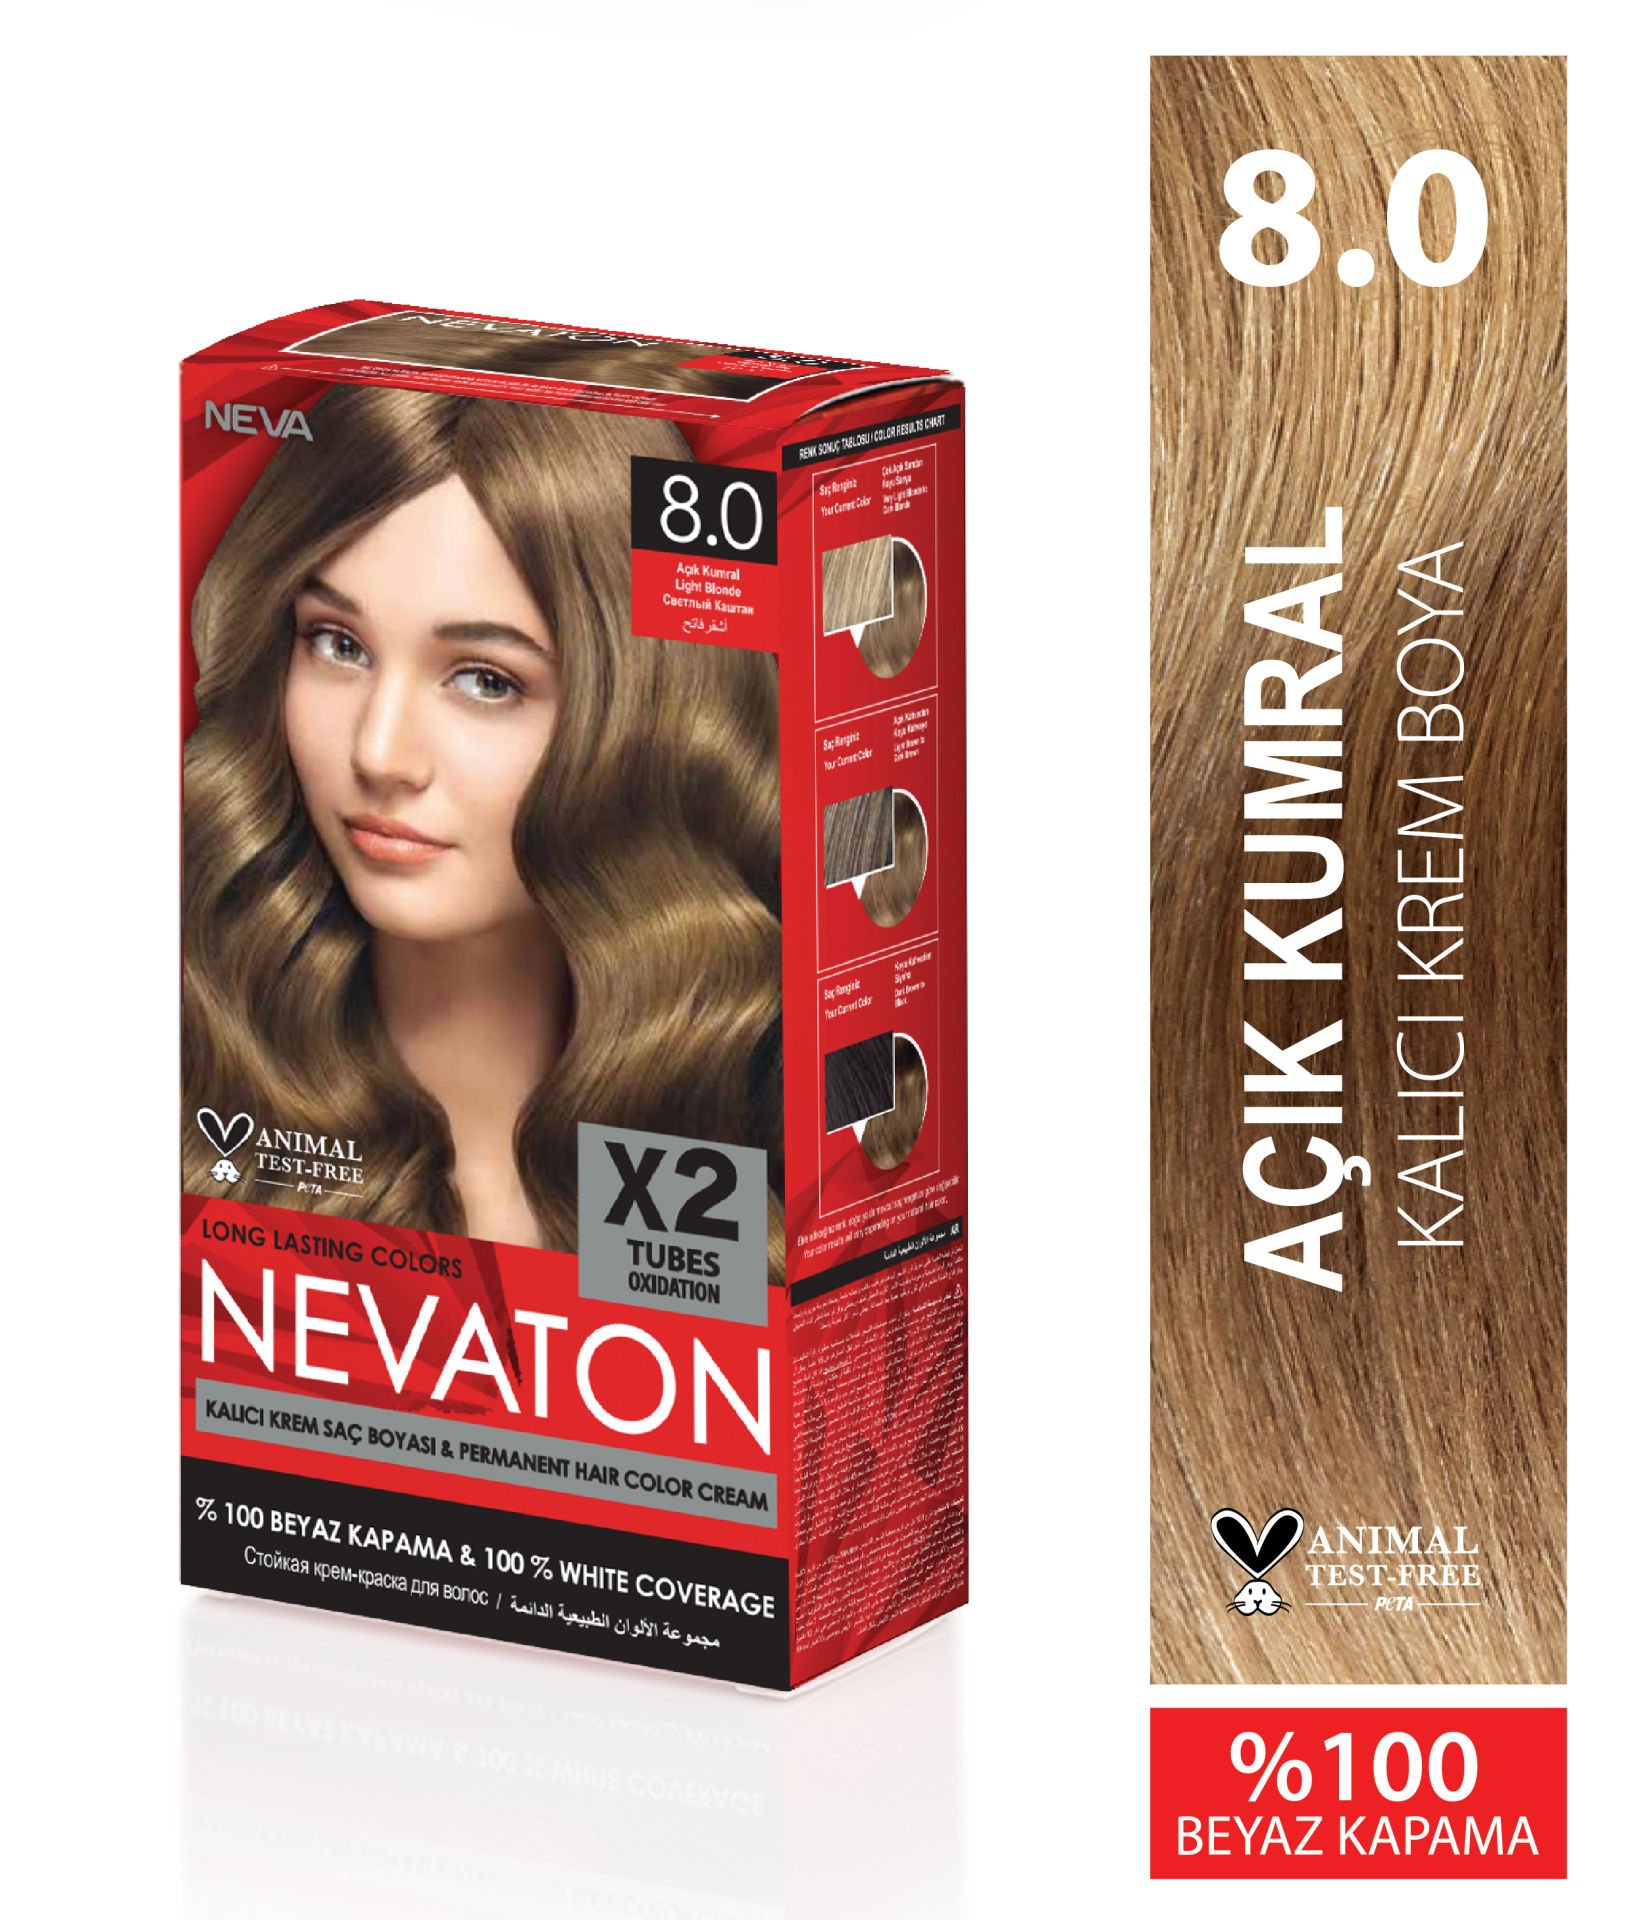 Nevaton 8.0 Açık Kumral Kalıcı Krem Saç Boyası